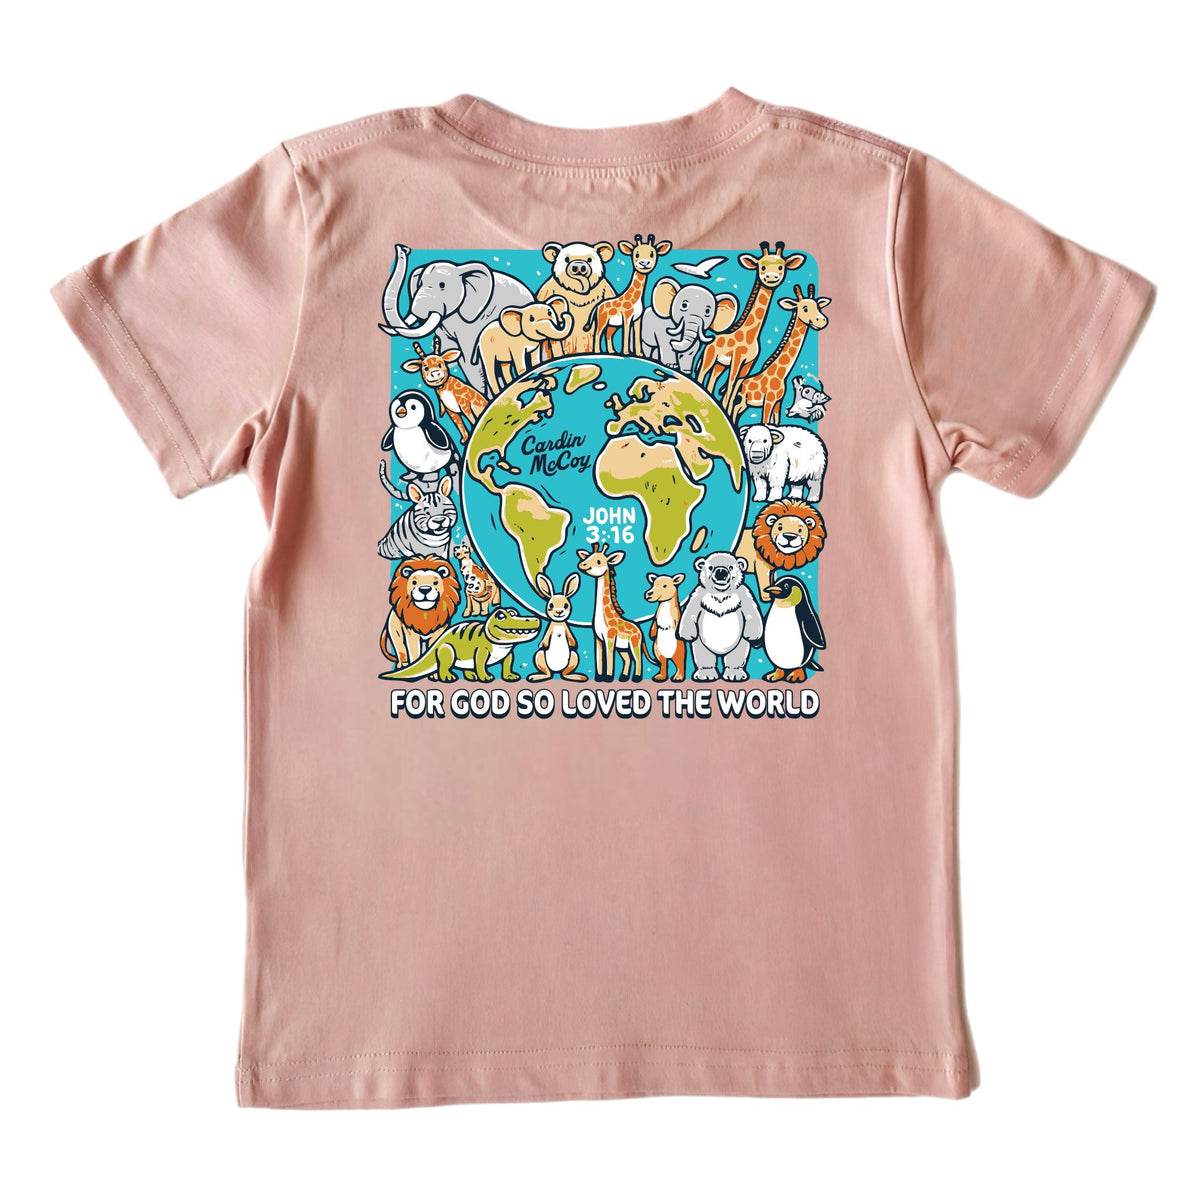 Kids' For God So Loved Short-Sleeve Tee Short Sleeve T-Shirt Cardin McCoy Rose Tan XXS (2/3) Pocket